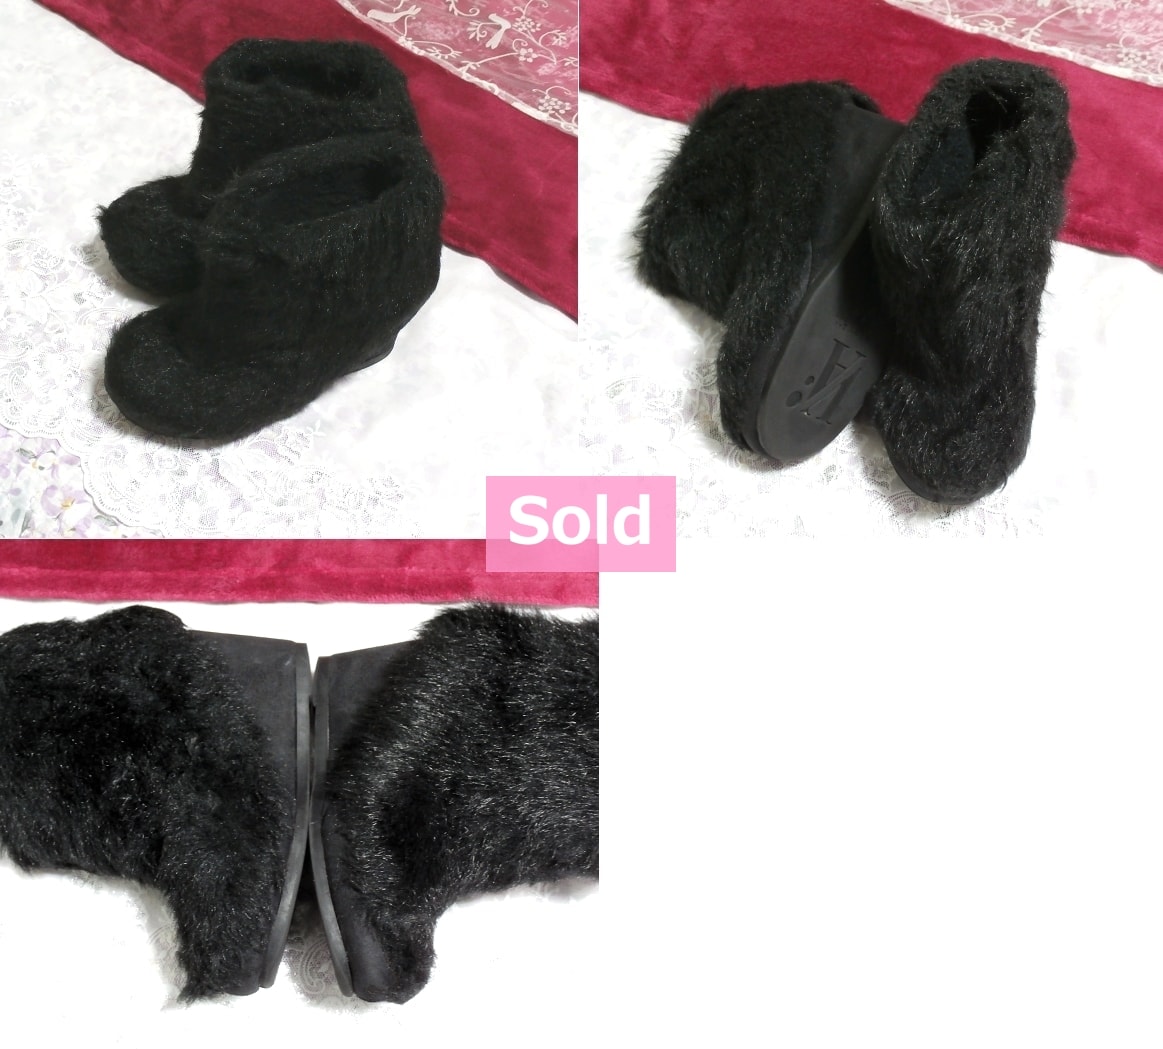 Black black fluffy secret 11cm / platform women's shoes / indoor room shoes Black 4.33 in / thick bottom women's shoes / sandal / high heels